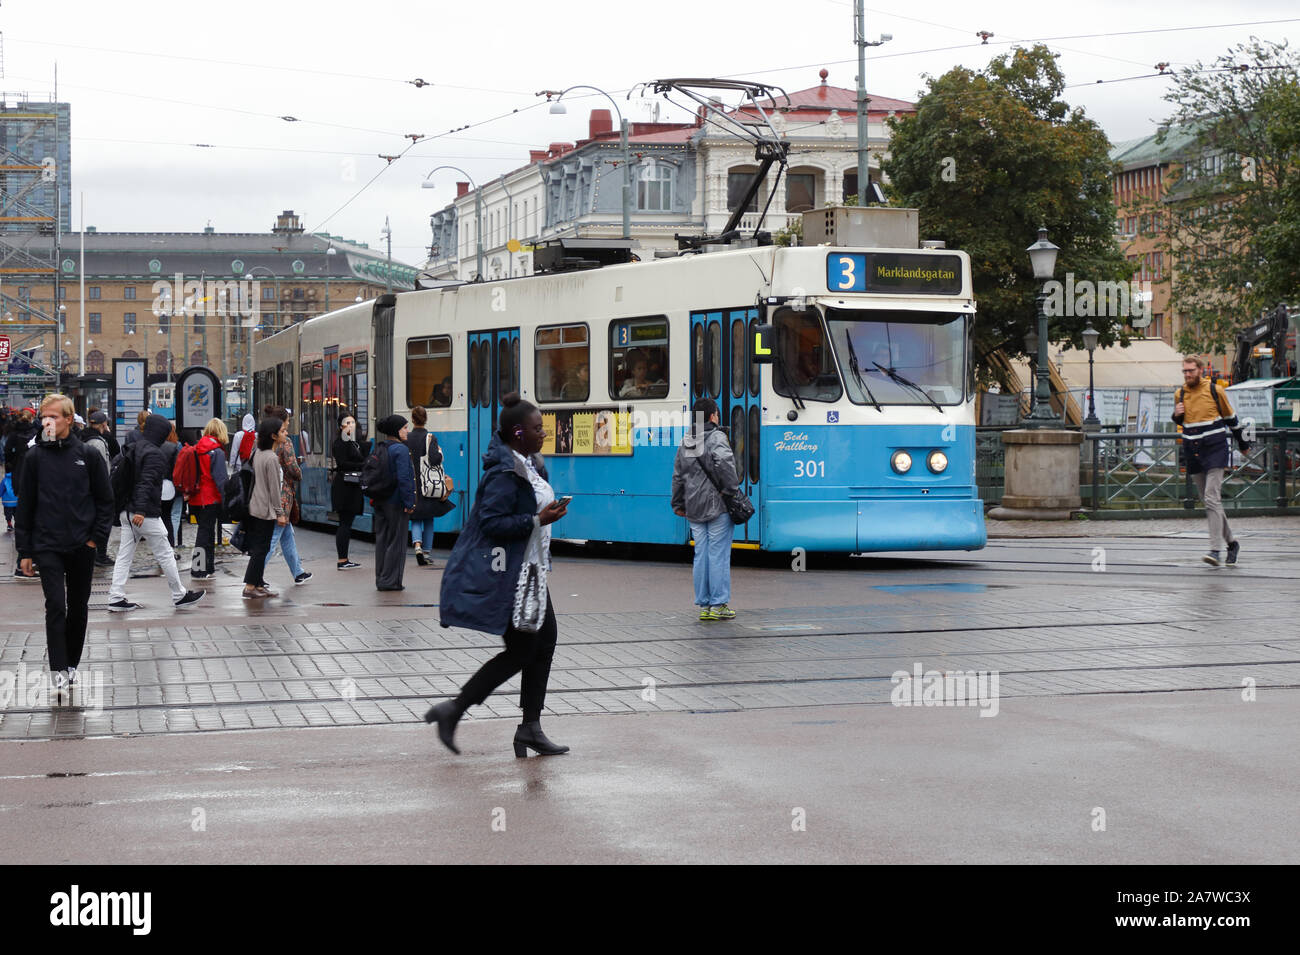 Göteborg, Schweden - 3. September 2019: Eine blaue Straßenbahn Klasse M 31 im Dienst auf der Linie 3 am Brunnsparken Bereich in der Innenstadt von distr Stockfoto